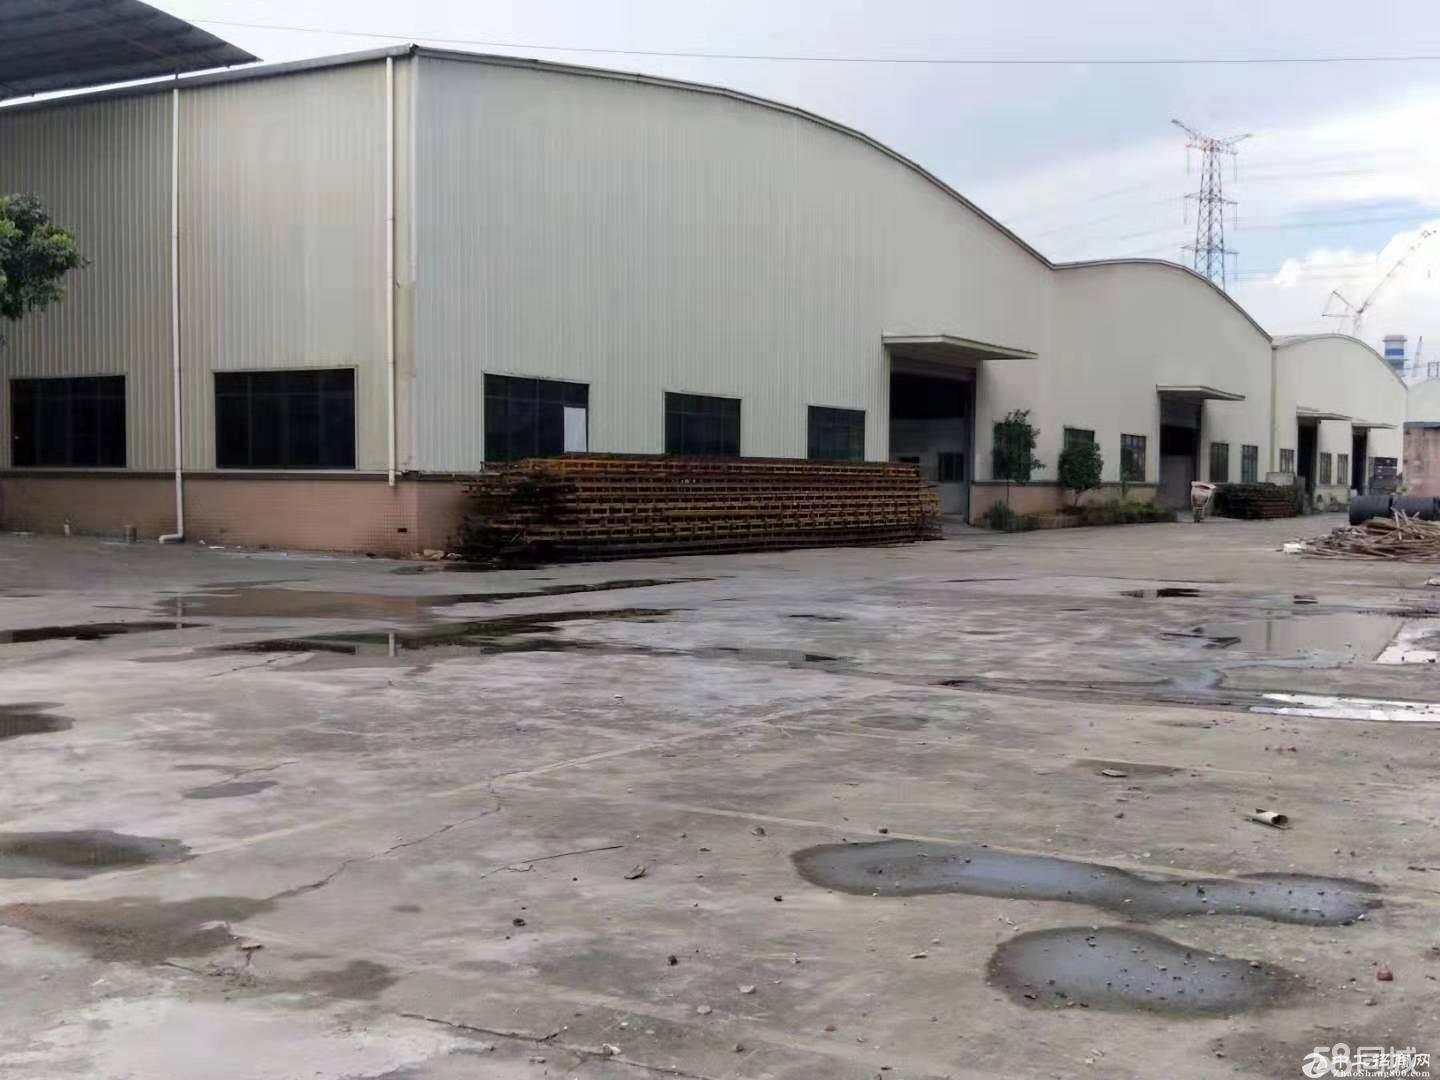 广州新空出滴水十米单一层钢构厂房仓库空地五千平方免费使用